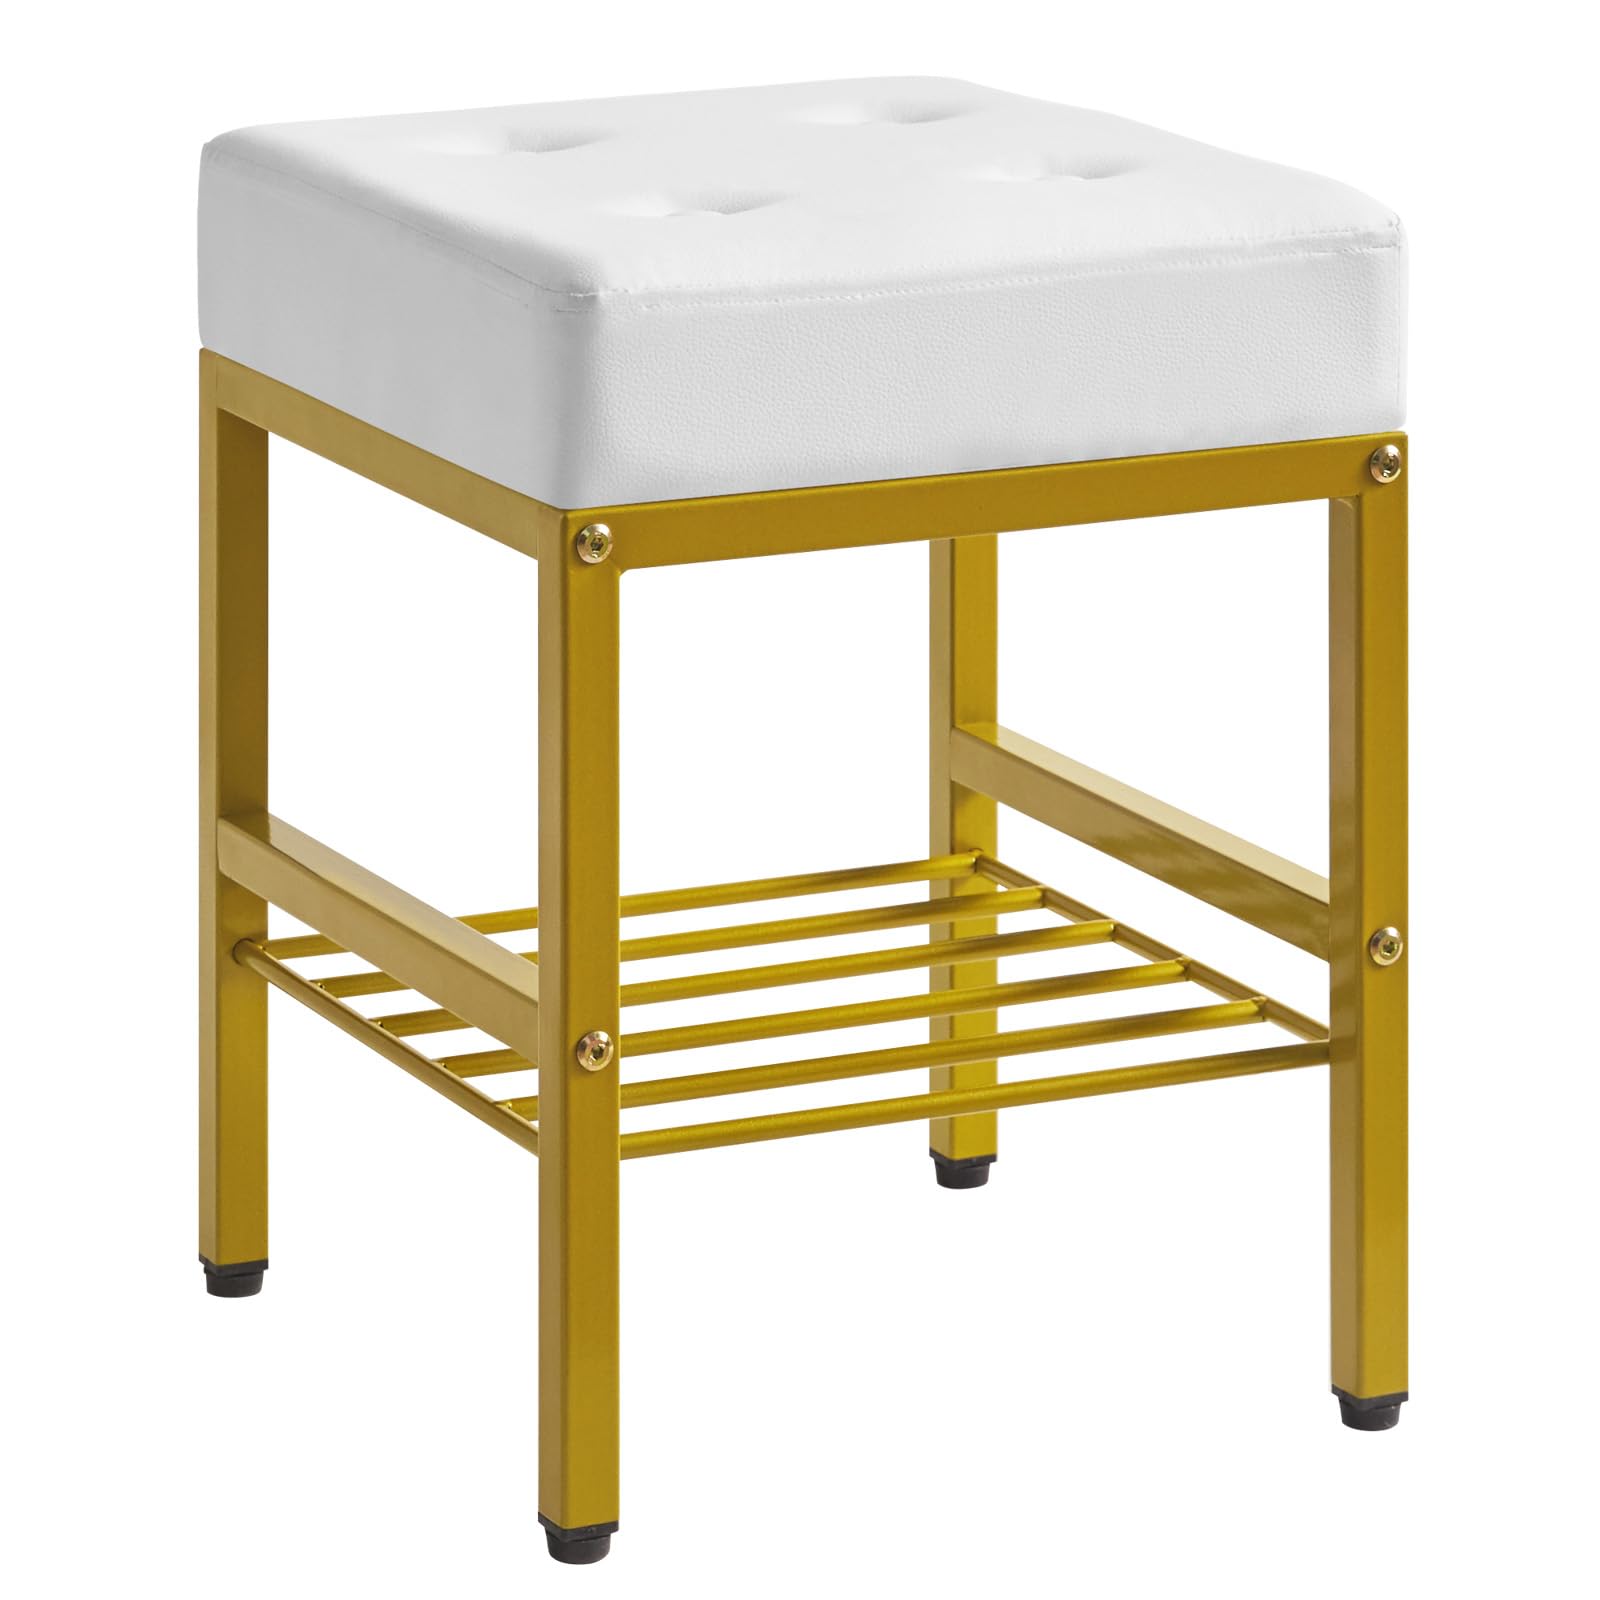 IBUYKE スツール おしゃれ 椅子 多機能収納スツール 運搬便利 足置き 大容量収納 耐荷重180kg PU合皮 小物収納 リビング/玄関/寝室適用 ブラウン 白い LG-60W